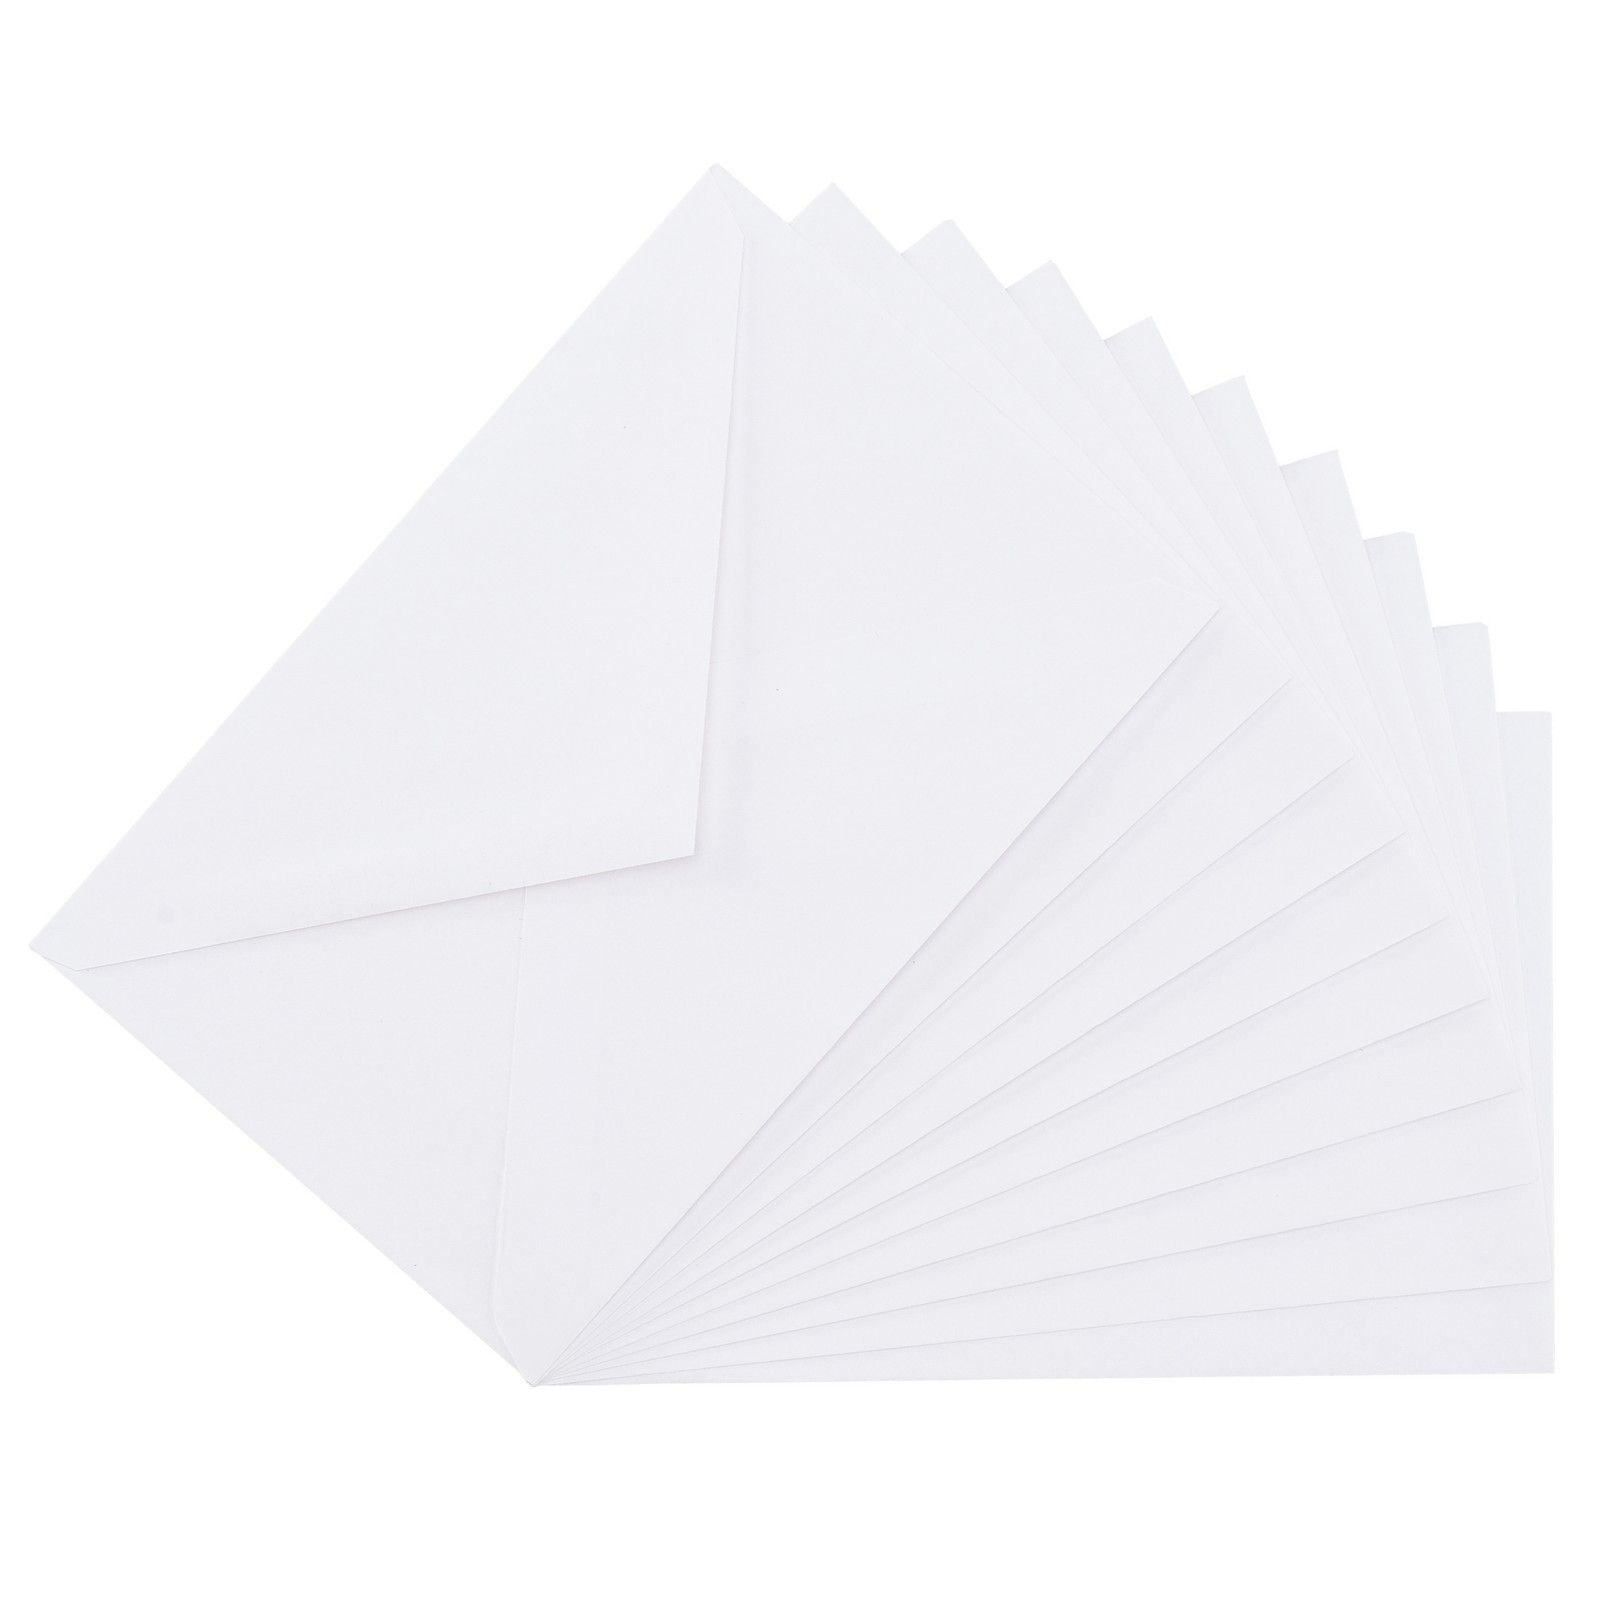 Nellie's Choice • Briefumschläge 11,4x17,6cm Weiß